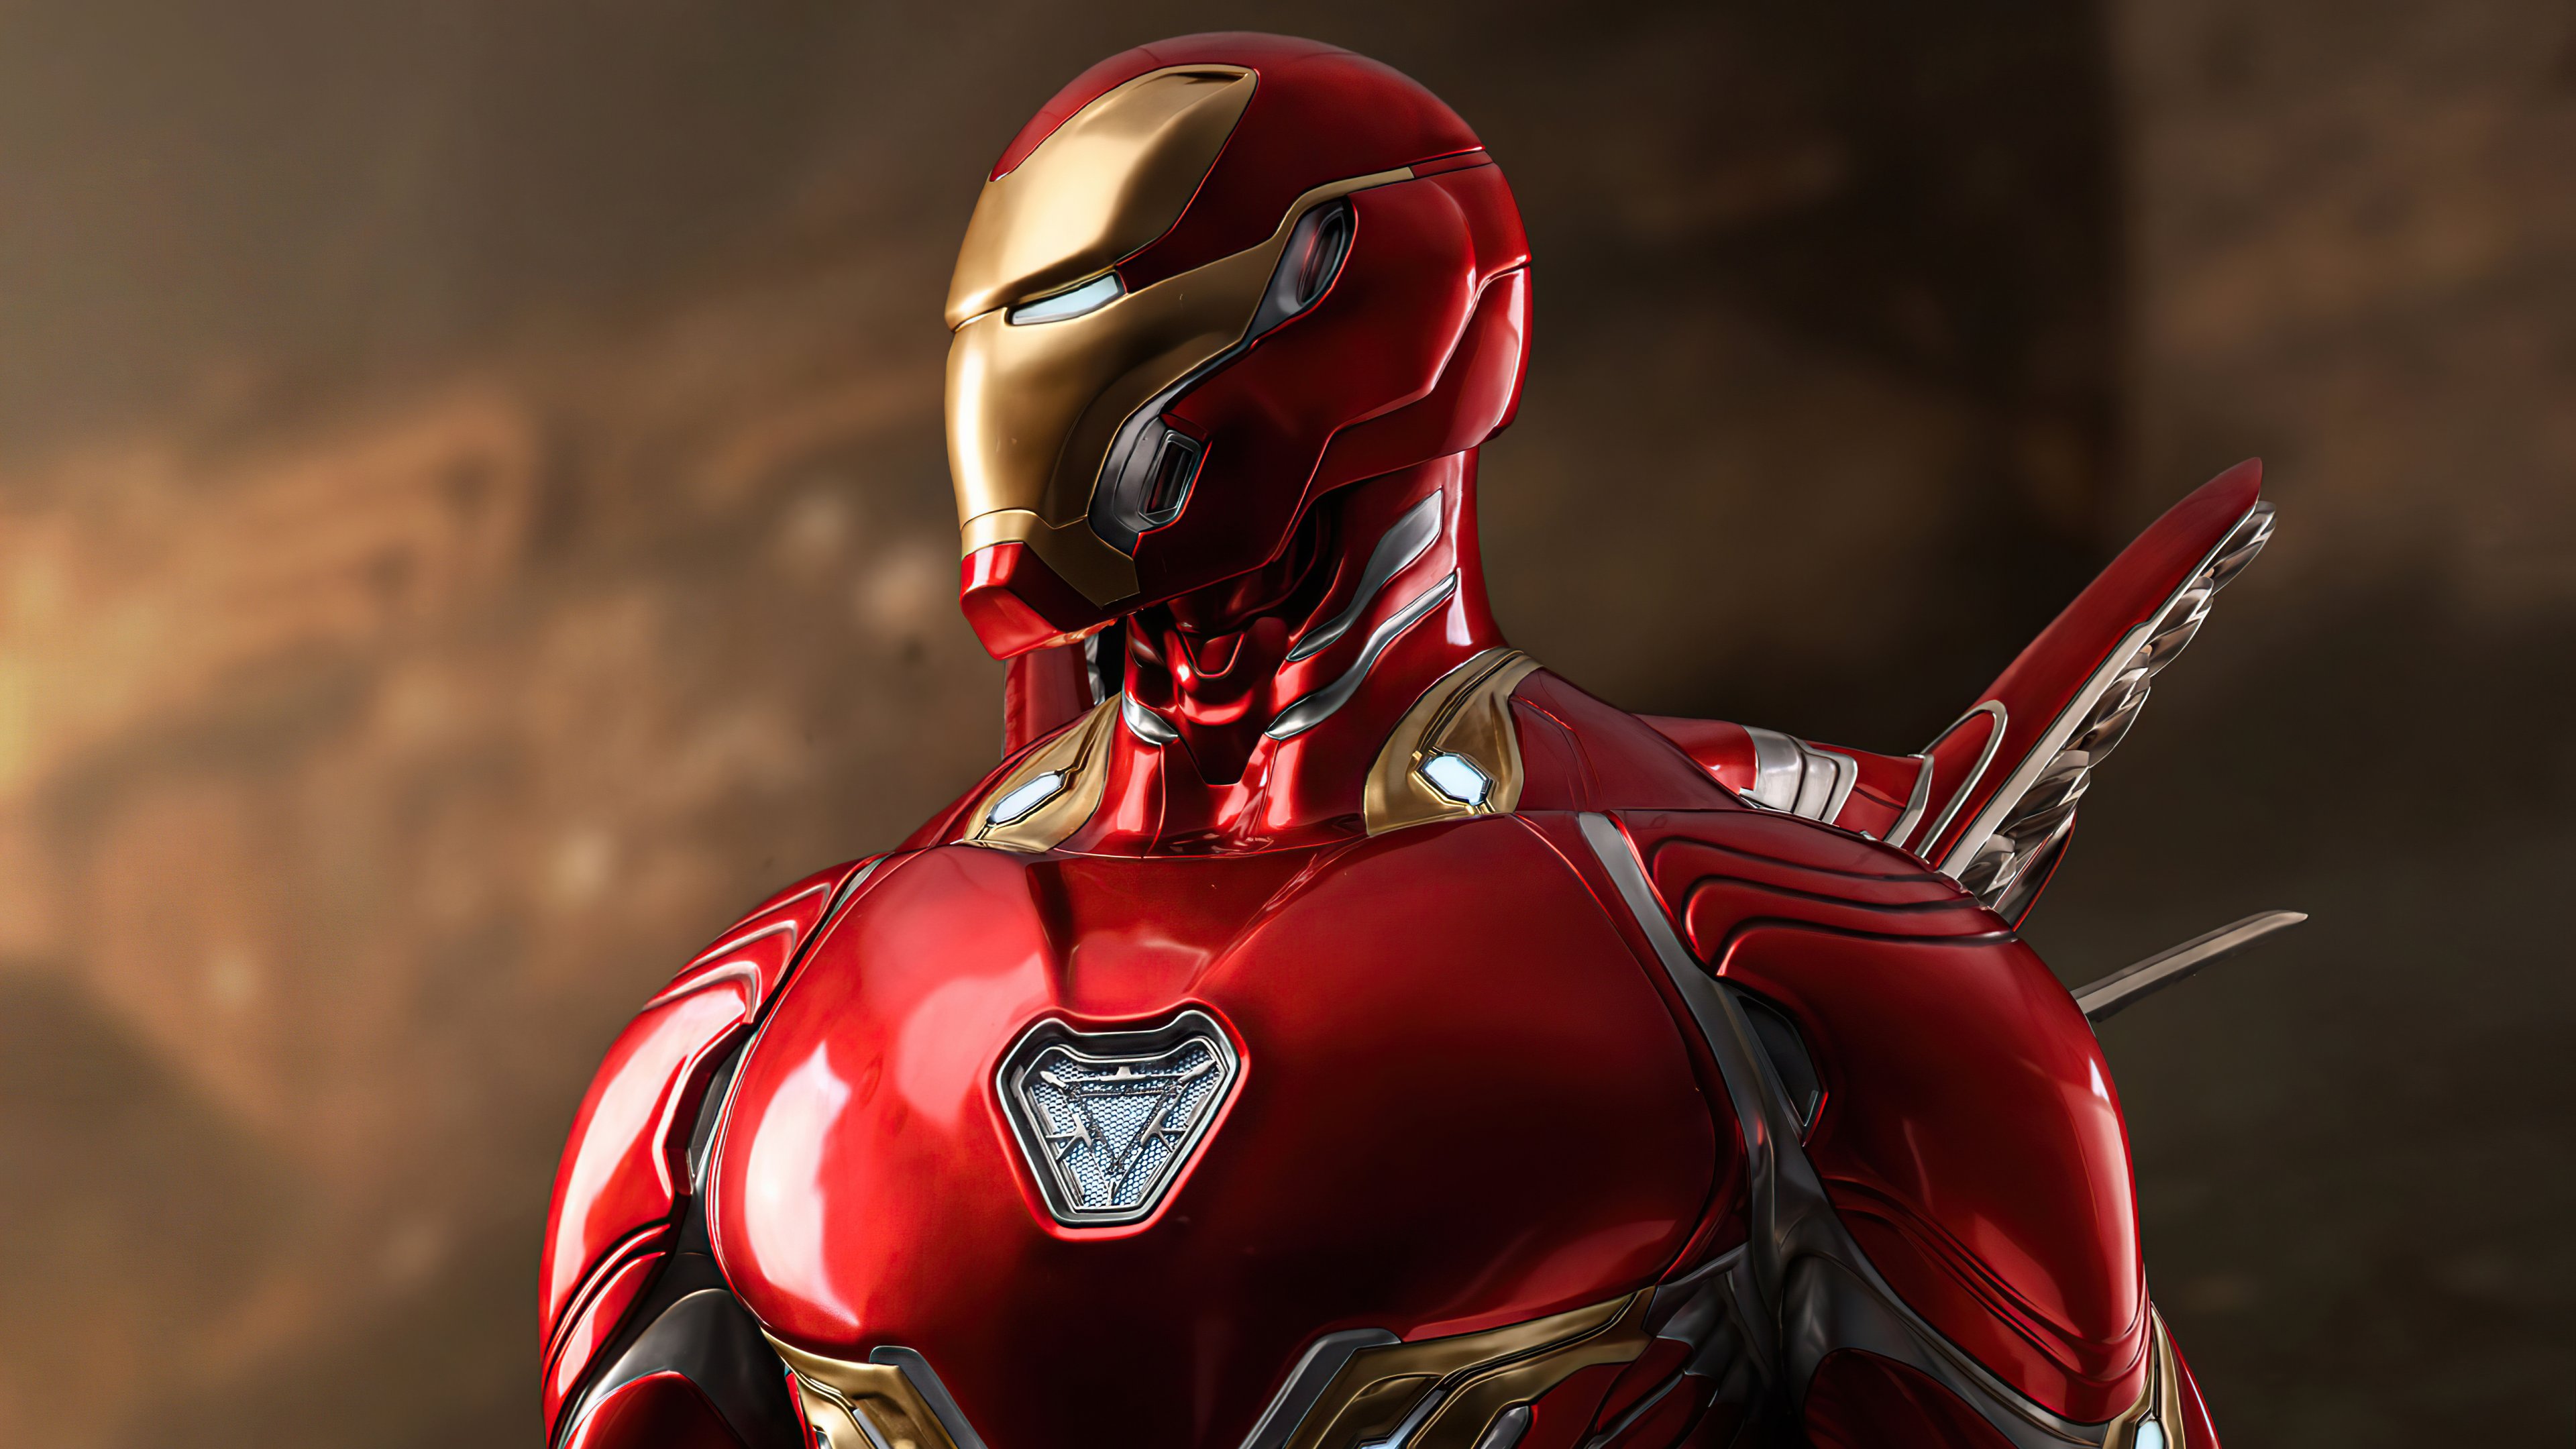 Iron Man New Suit Wallpaper 5k Ultra HD ID:6726